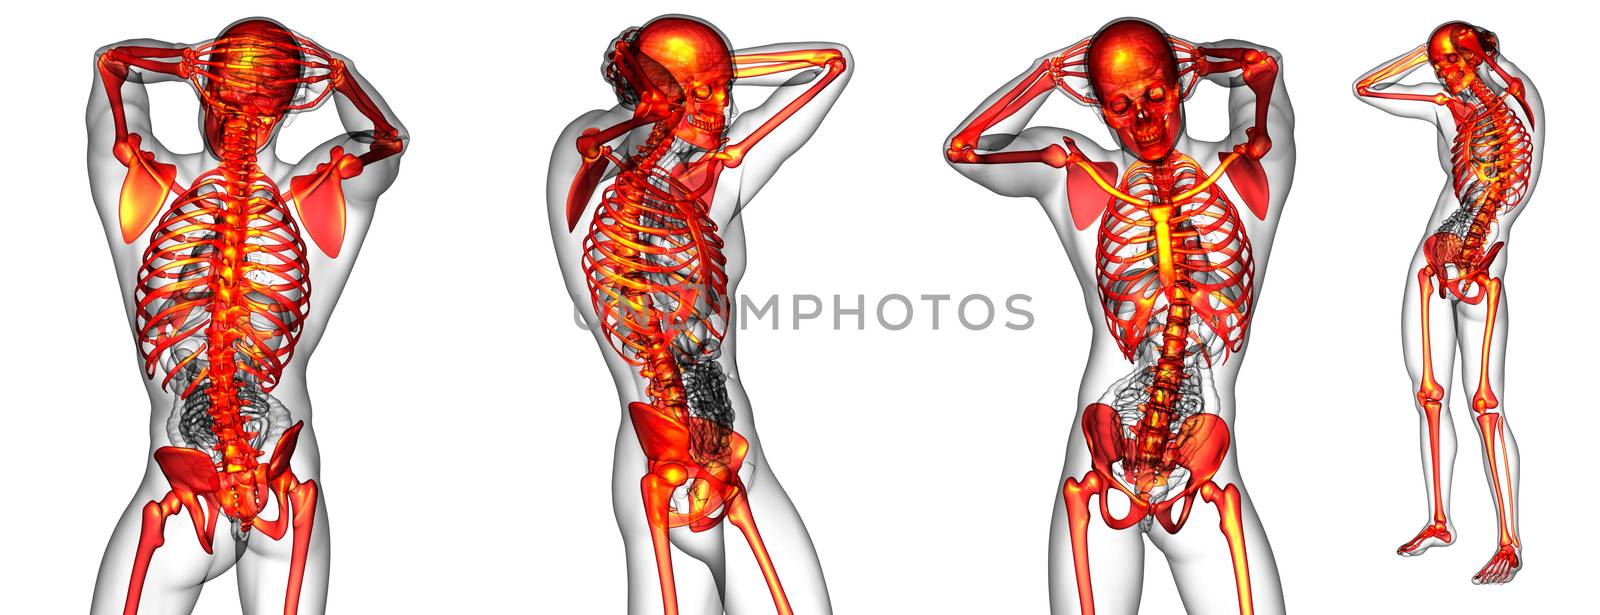 3d rendering medical illustration of the human skeleton